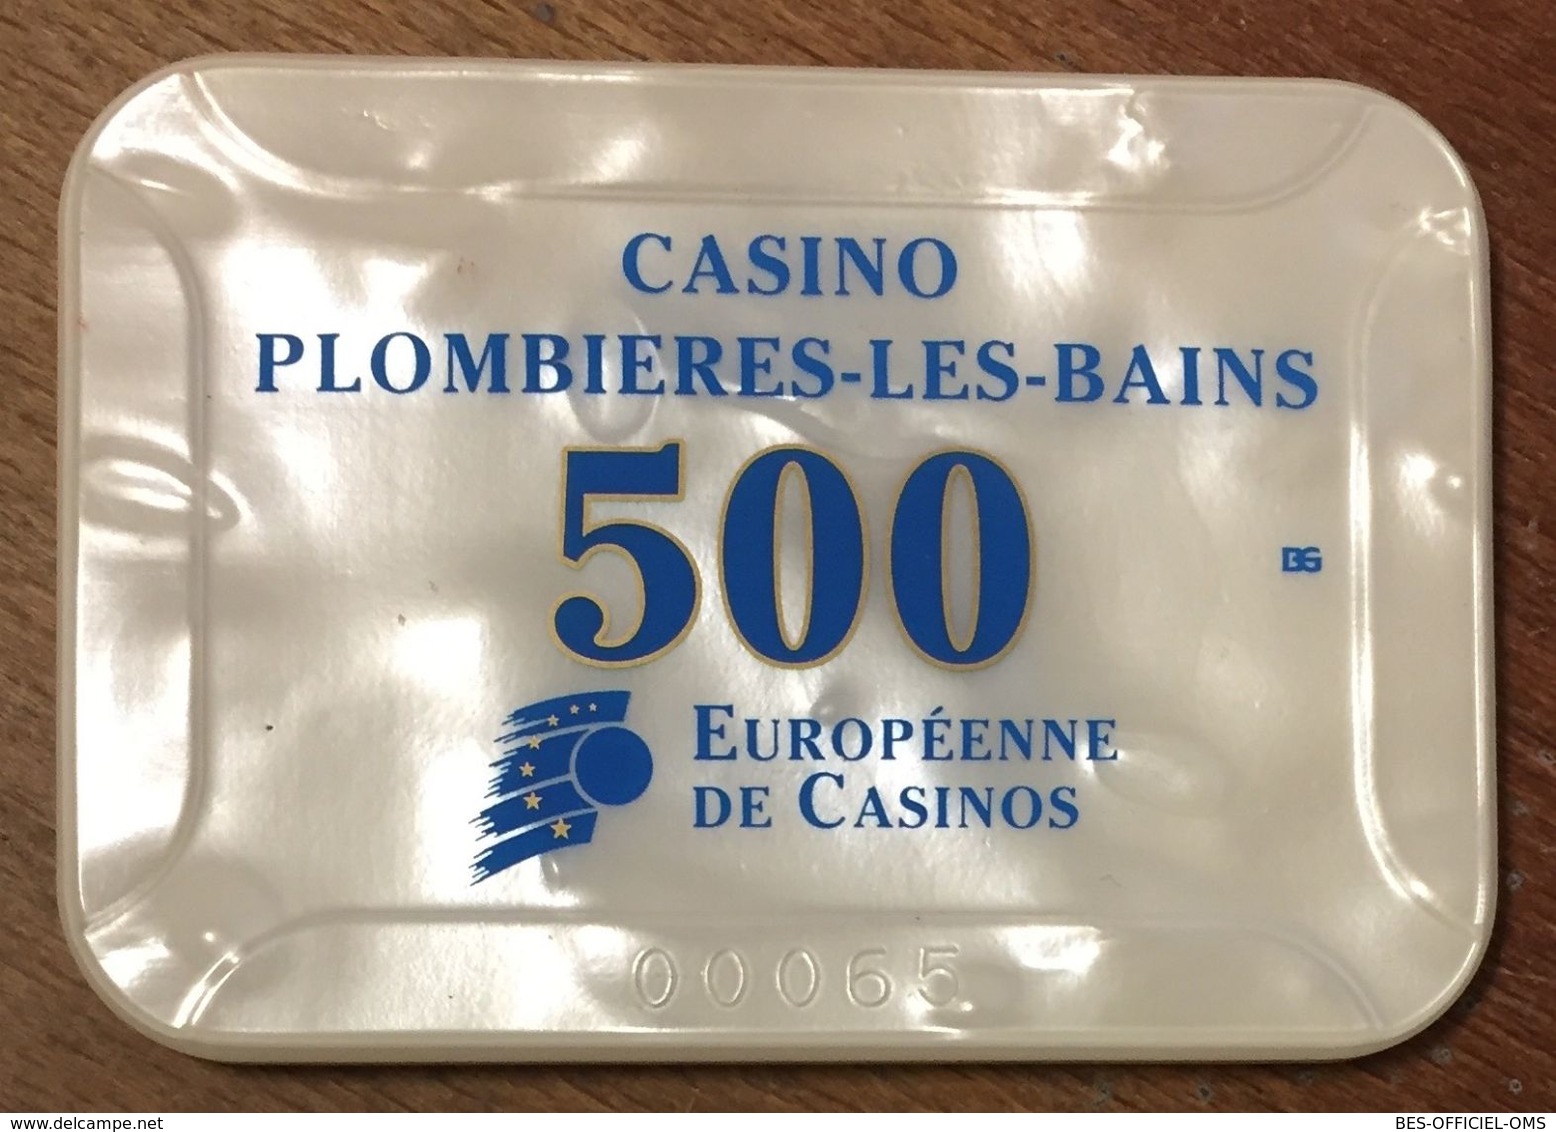 88 PLOMBIERES-LES-BAINS CASINO EUROPÉENNE DE CASINOS PLAQU DE 500 FRANCS N°00065 JETON CHIP TOKENS COINS - Casino